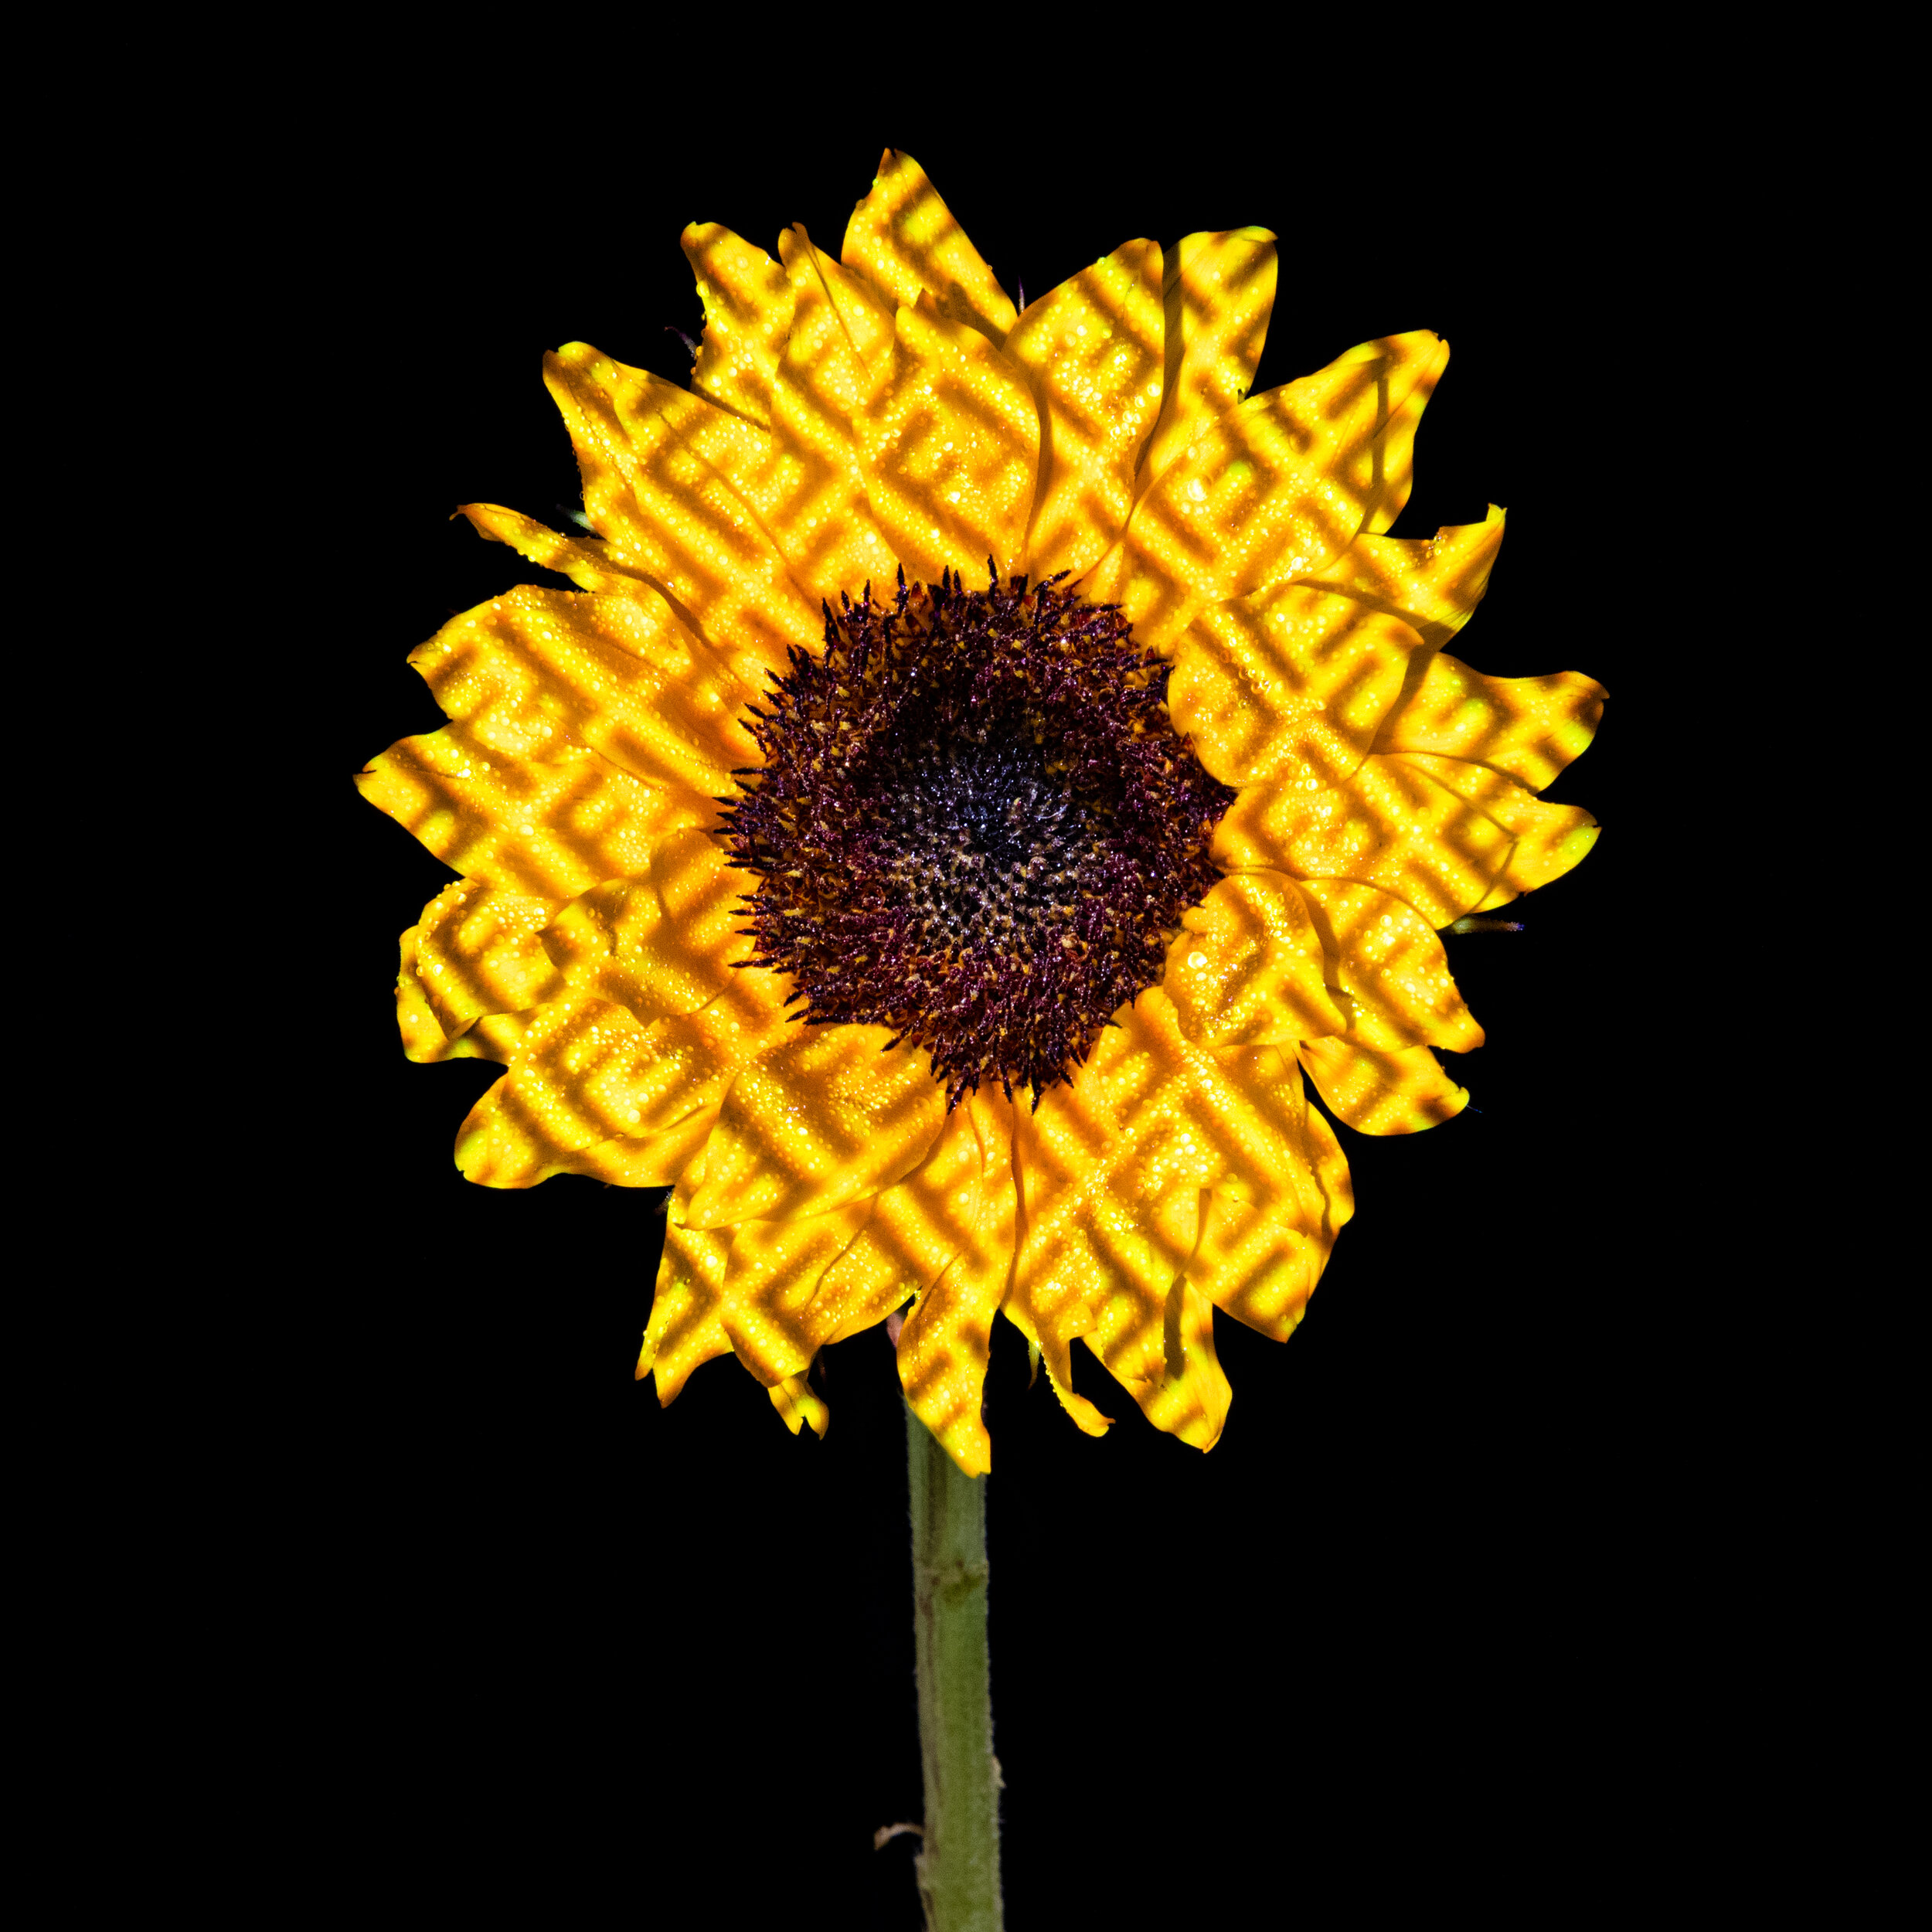 Sunflower_032520_Fendi-1.jpg